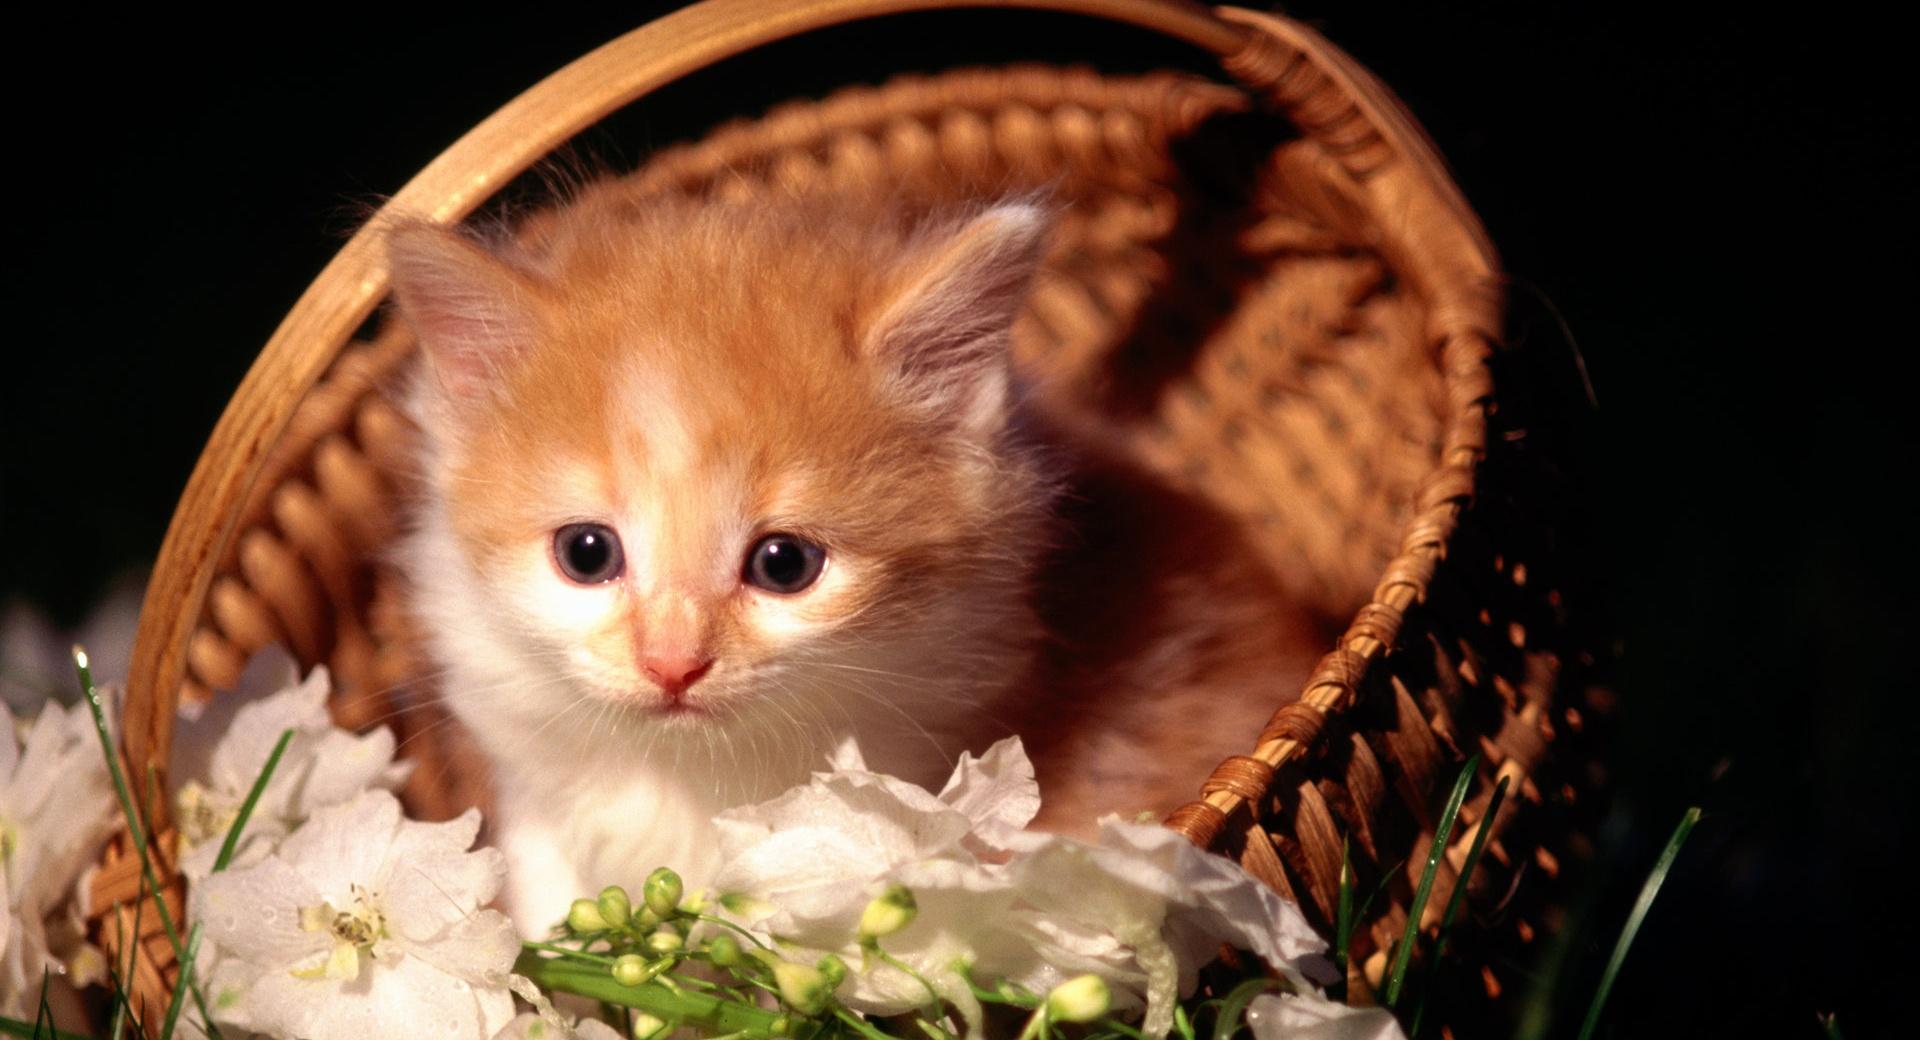 Cute Kitten In Basket wallpapers HD quality